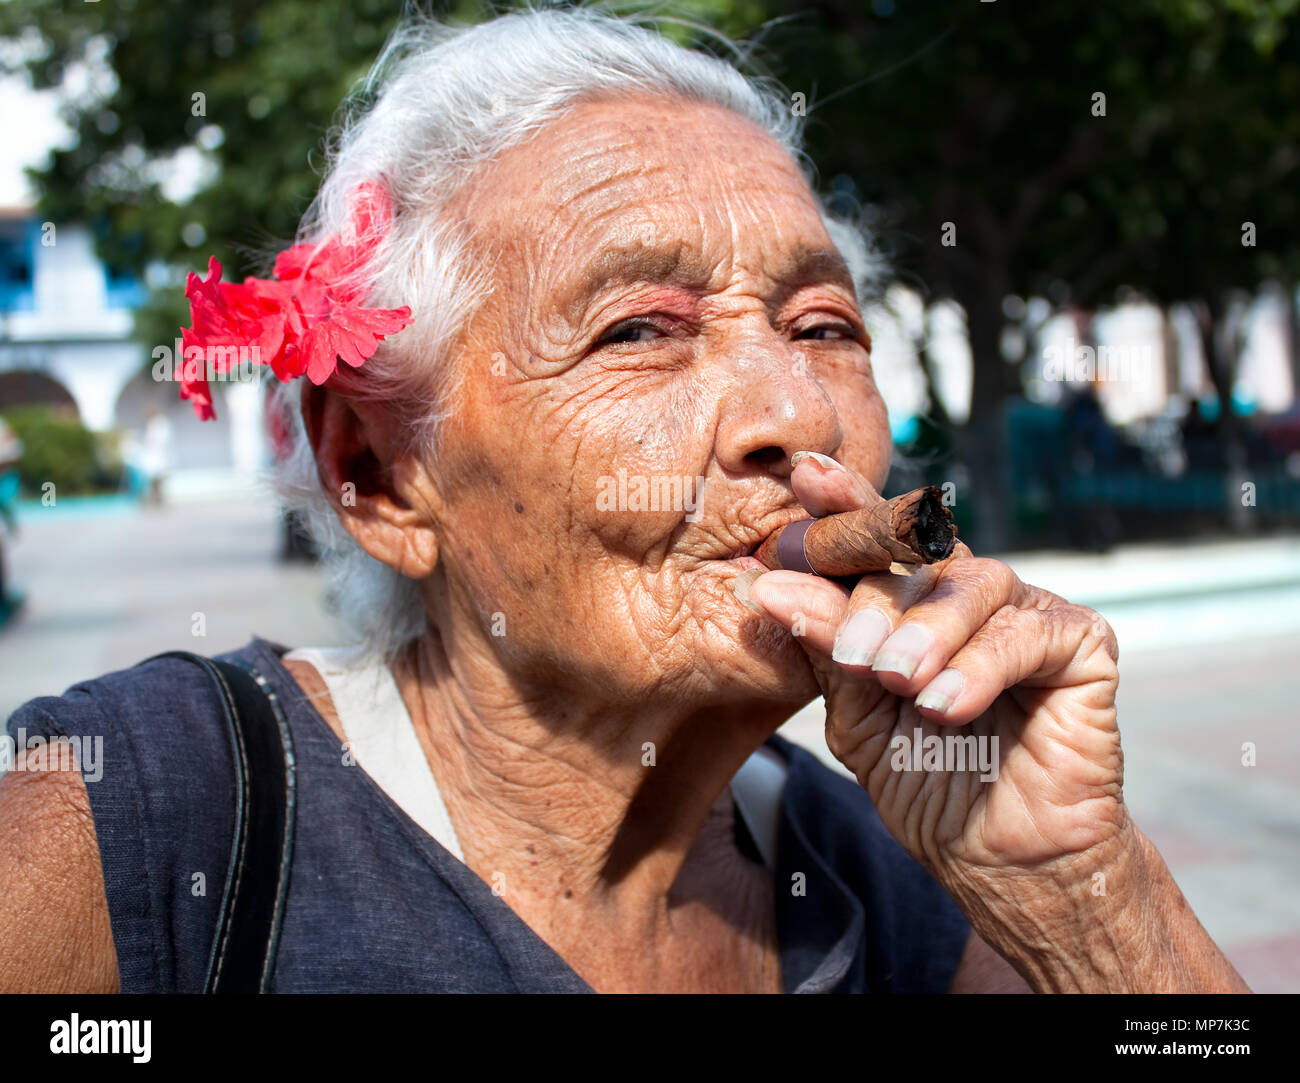 Women cigar smokers